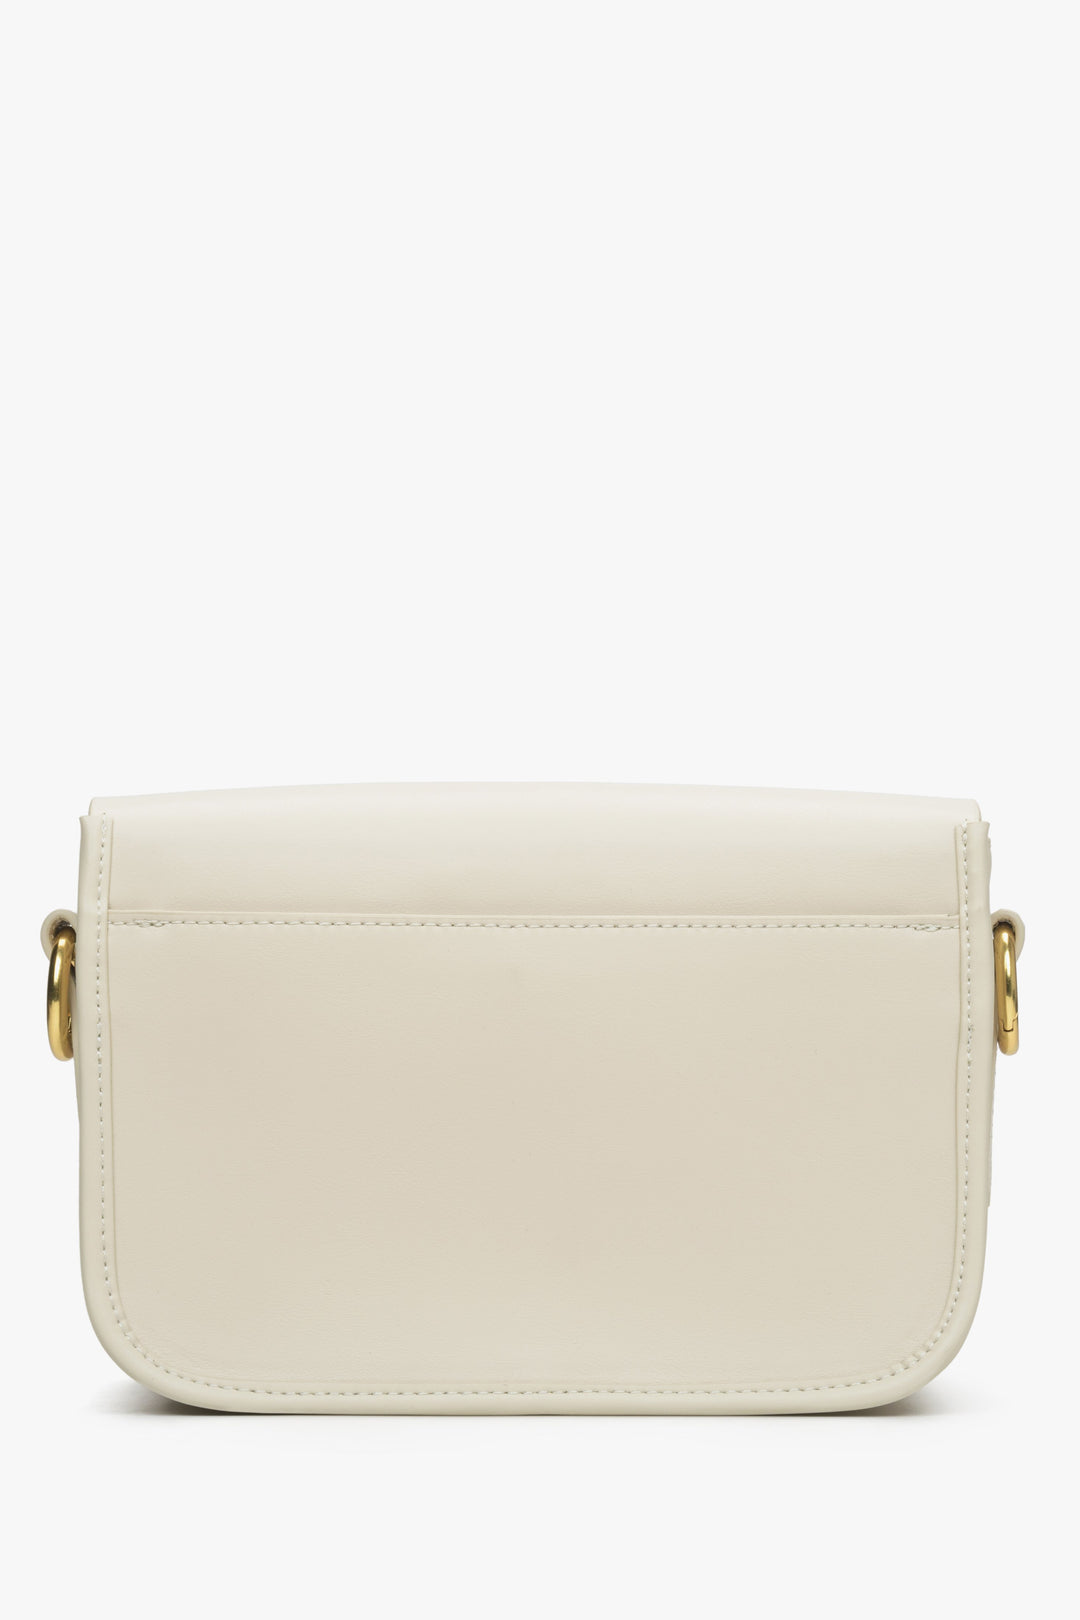 Women's light beige leather handbag by Estro - reverse side.